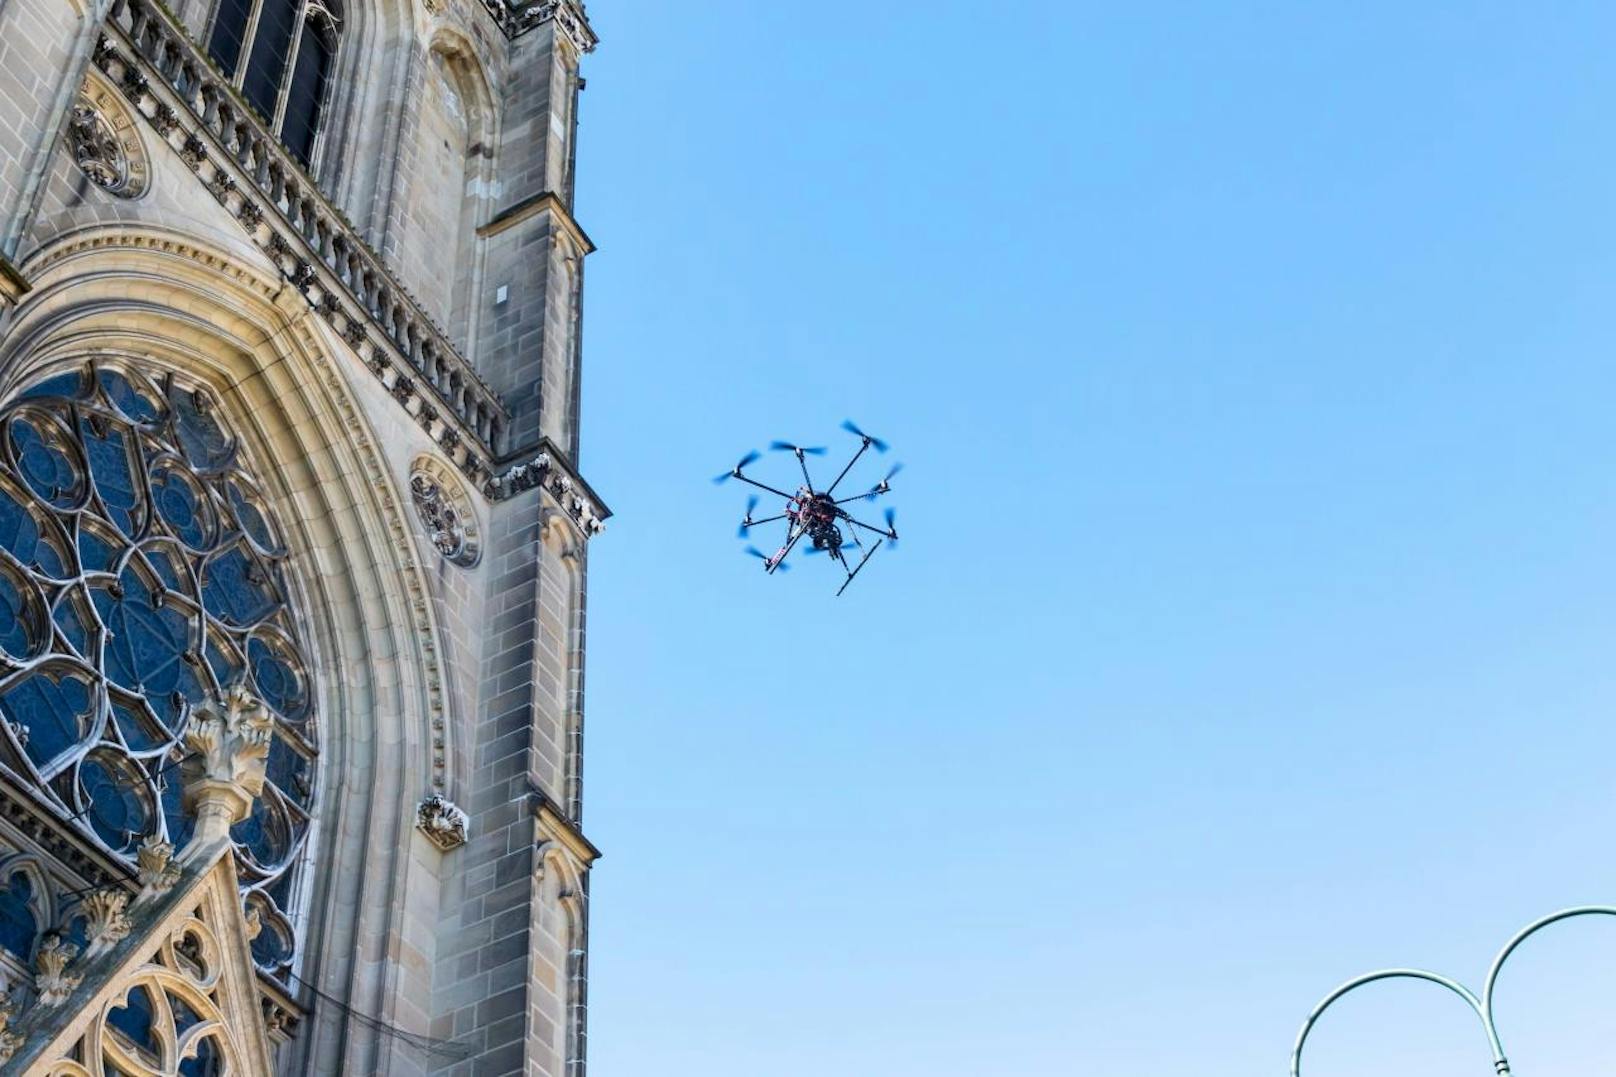 Zur Vermessung des Mariendoms wurde eine Drohne eingesetzt. Einem Dom-Bewohner gefiel das aber gar nicht: Ein Turmfalke fühlte sich vom Flugobjekt bedroht, zog auffällig enge Kreise um die Drohne.